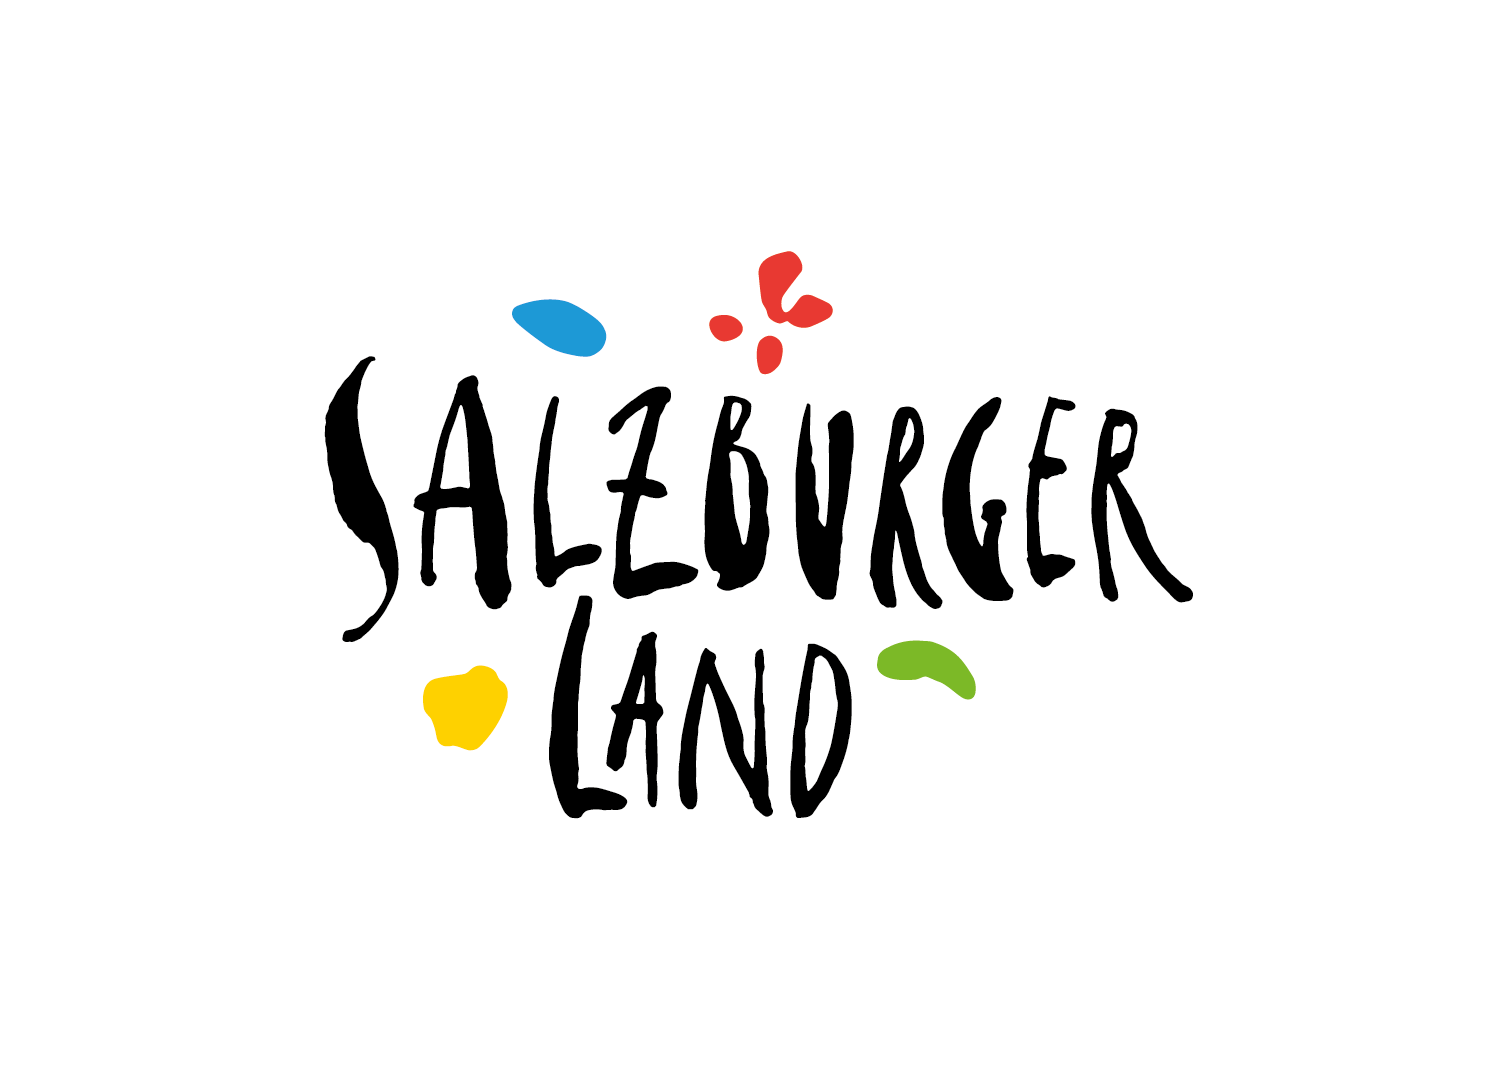 Logo Salzburgerland